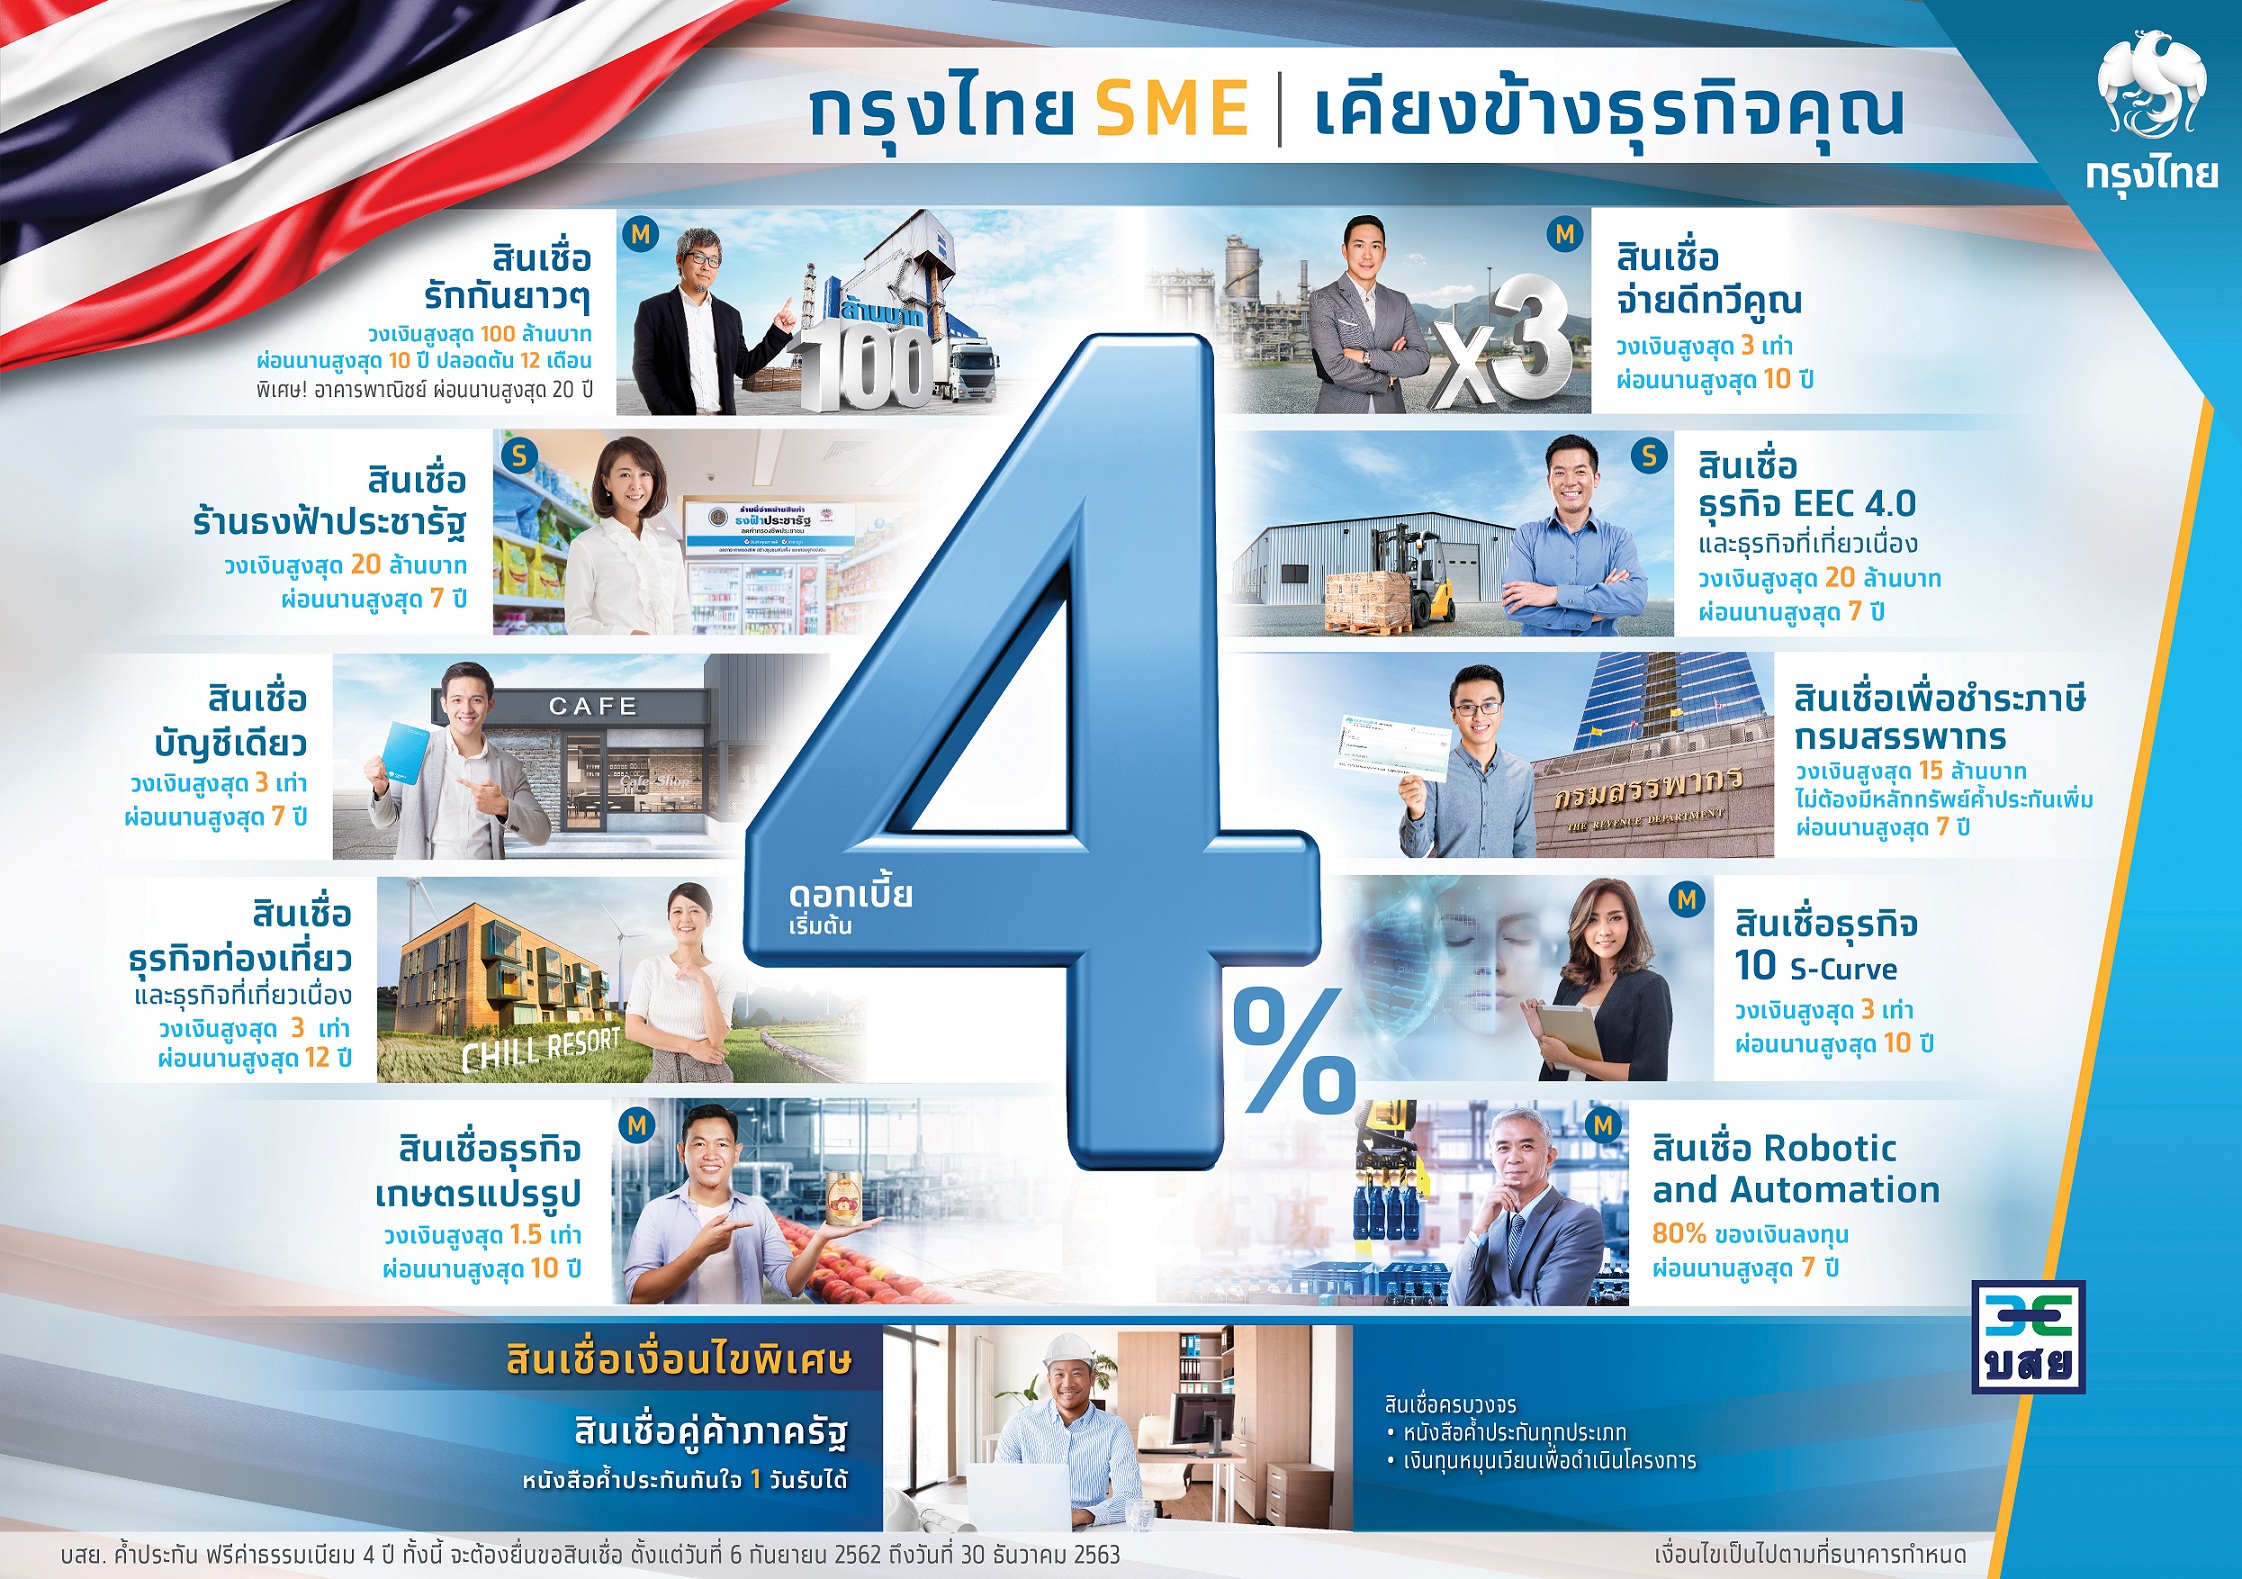 กรุงไทยเสริมแกร่ง ปล่อยกู้SME ดอกเบี้ย4%